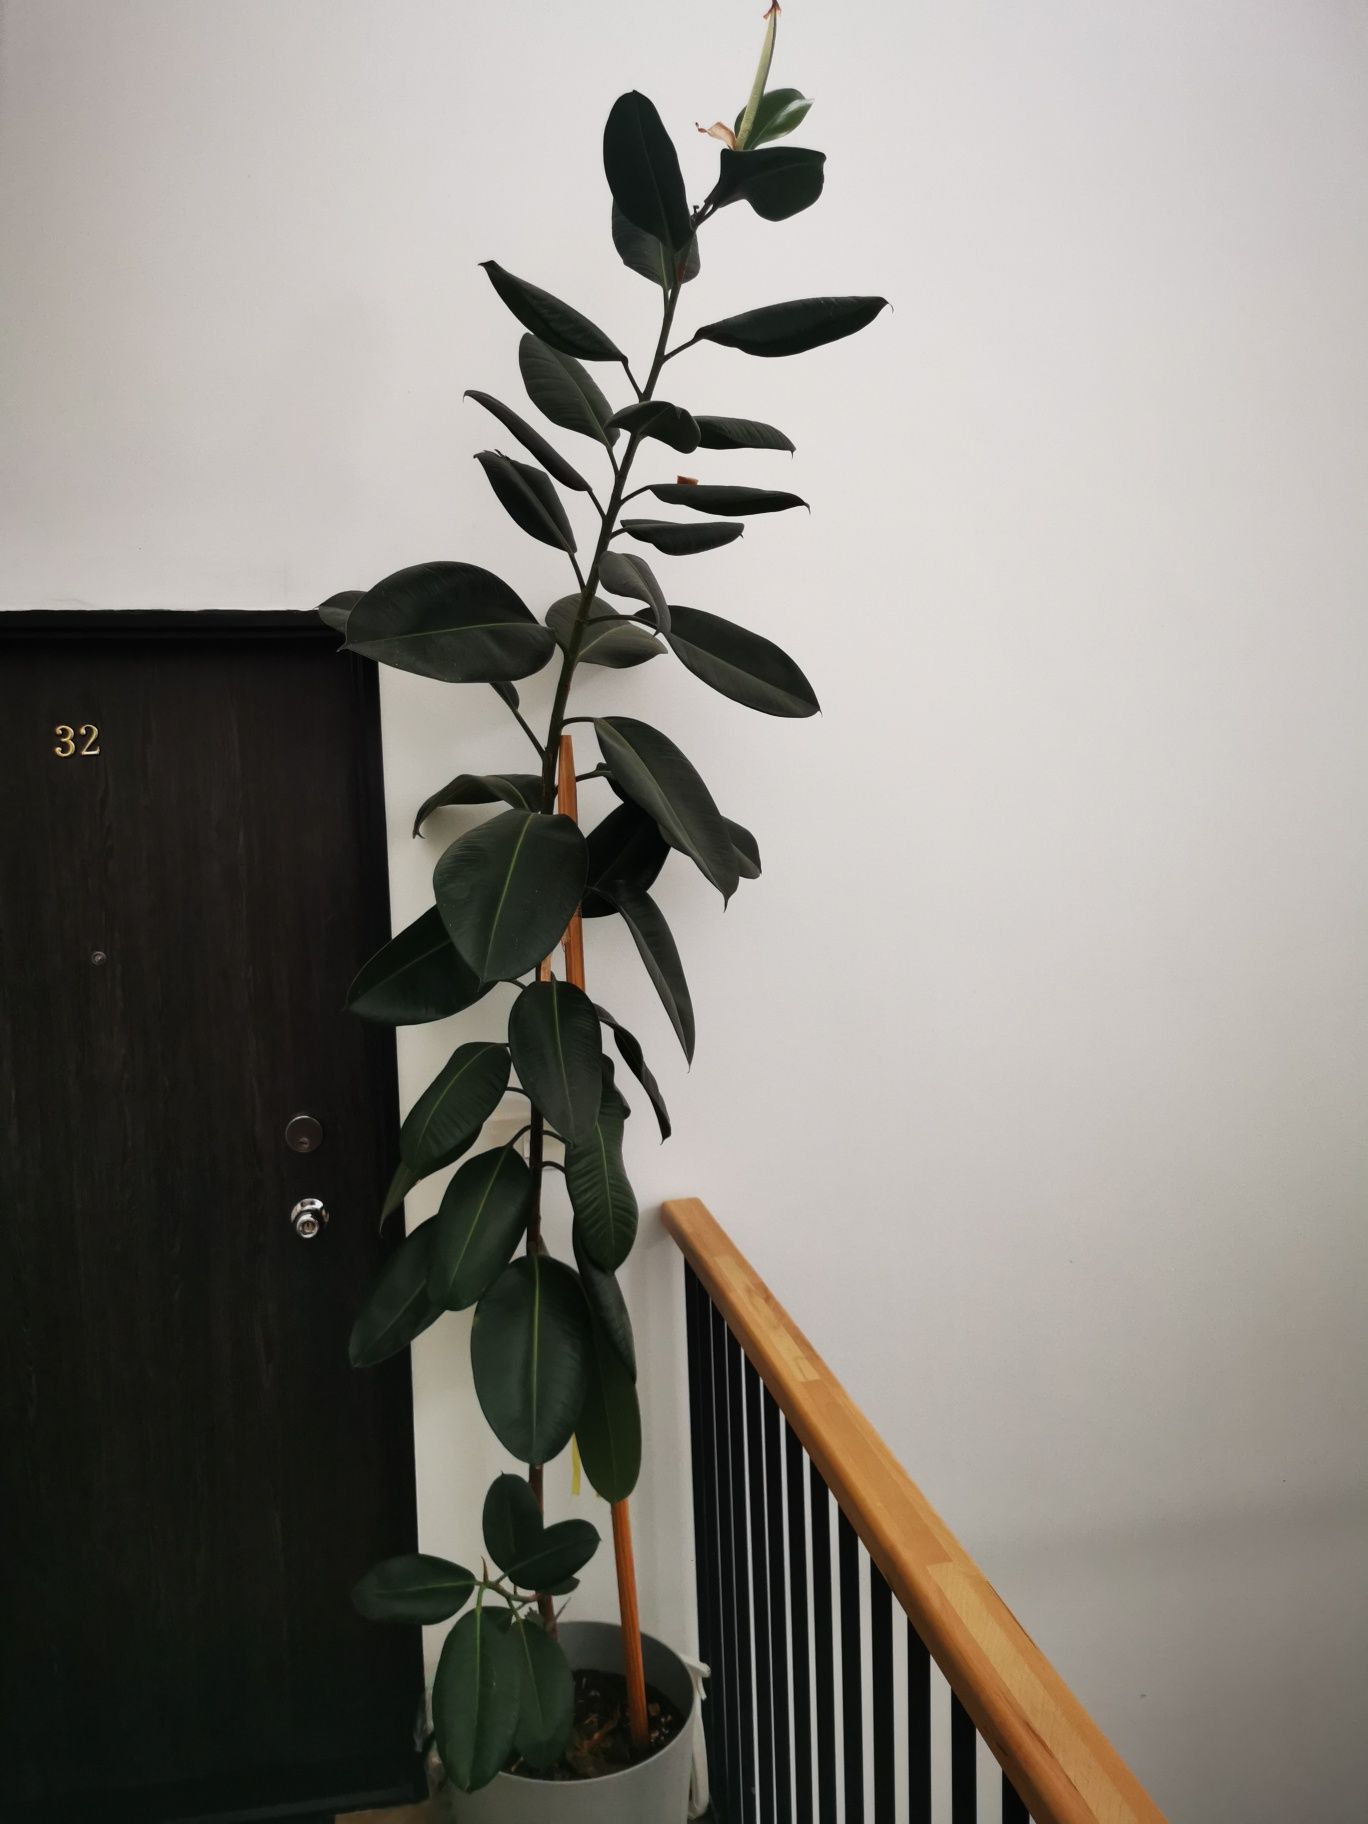 Vand planta decorativa de interior. Ficus 3m+ înălțime.